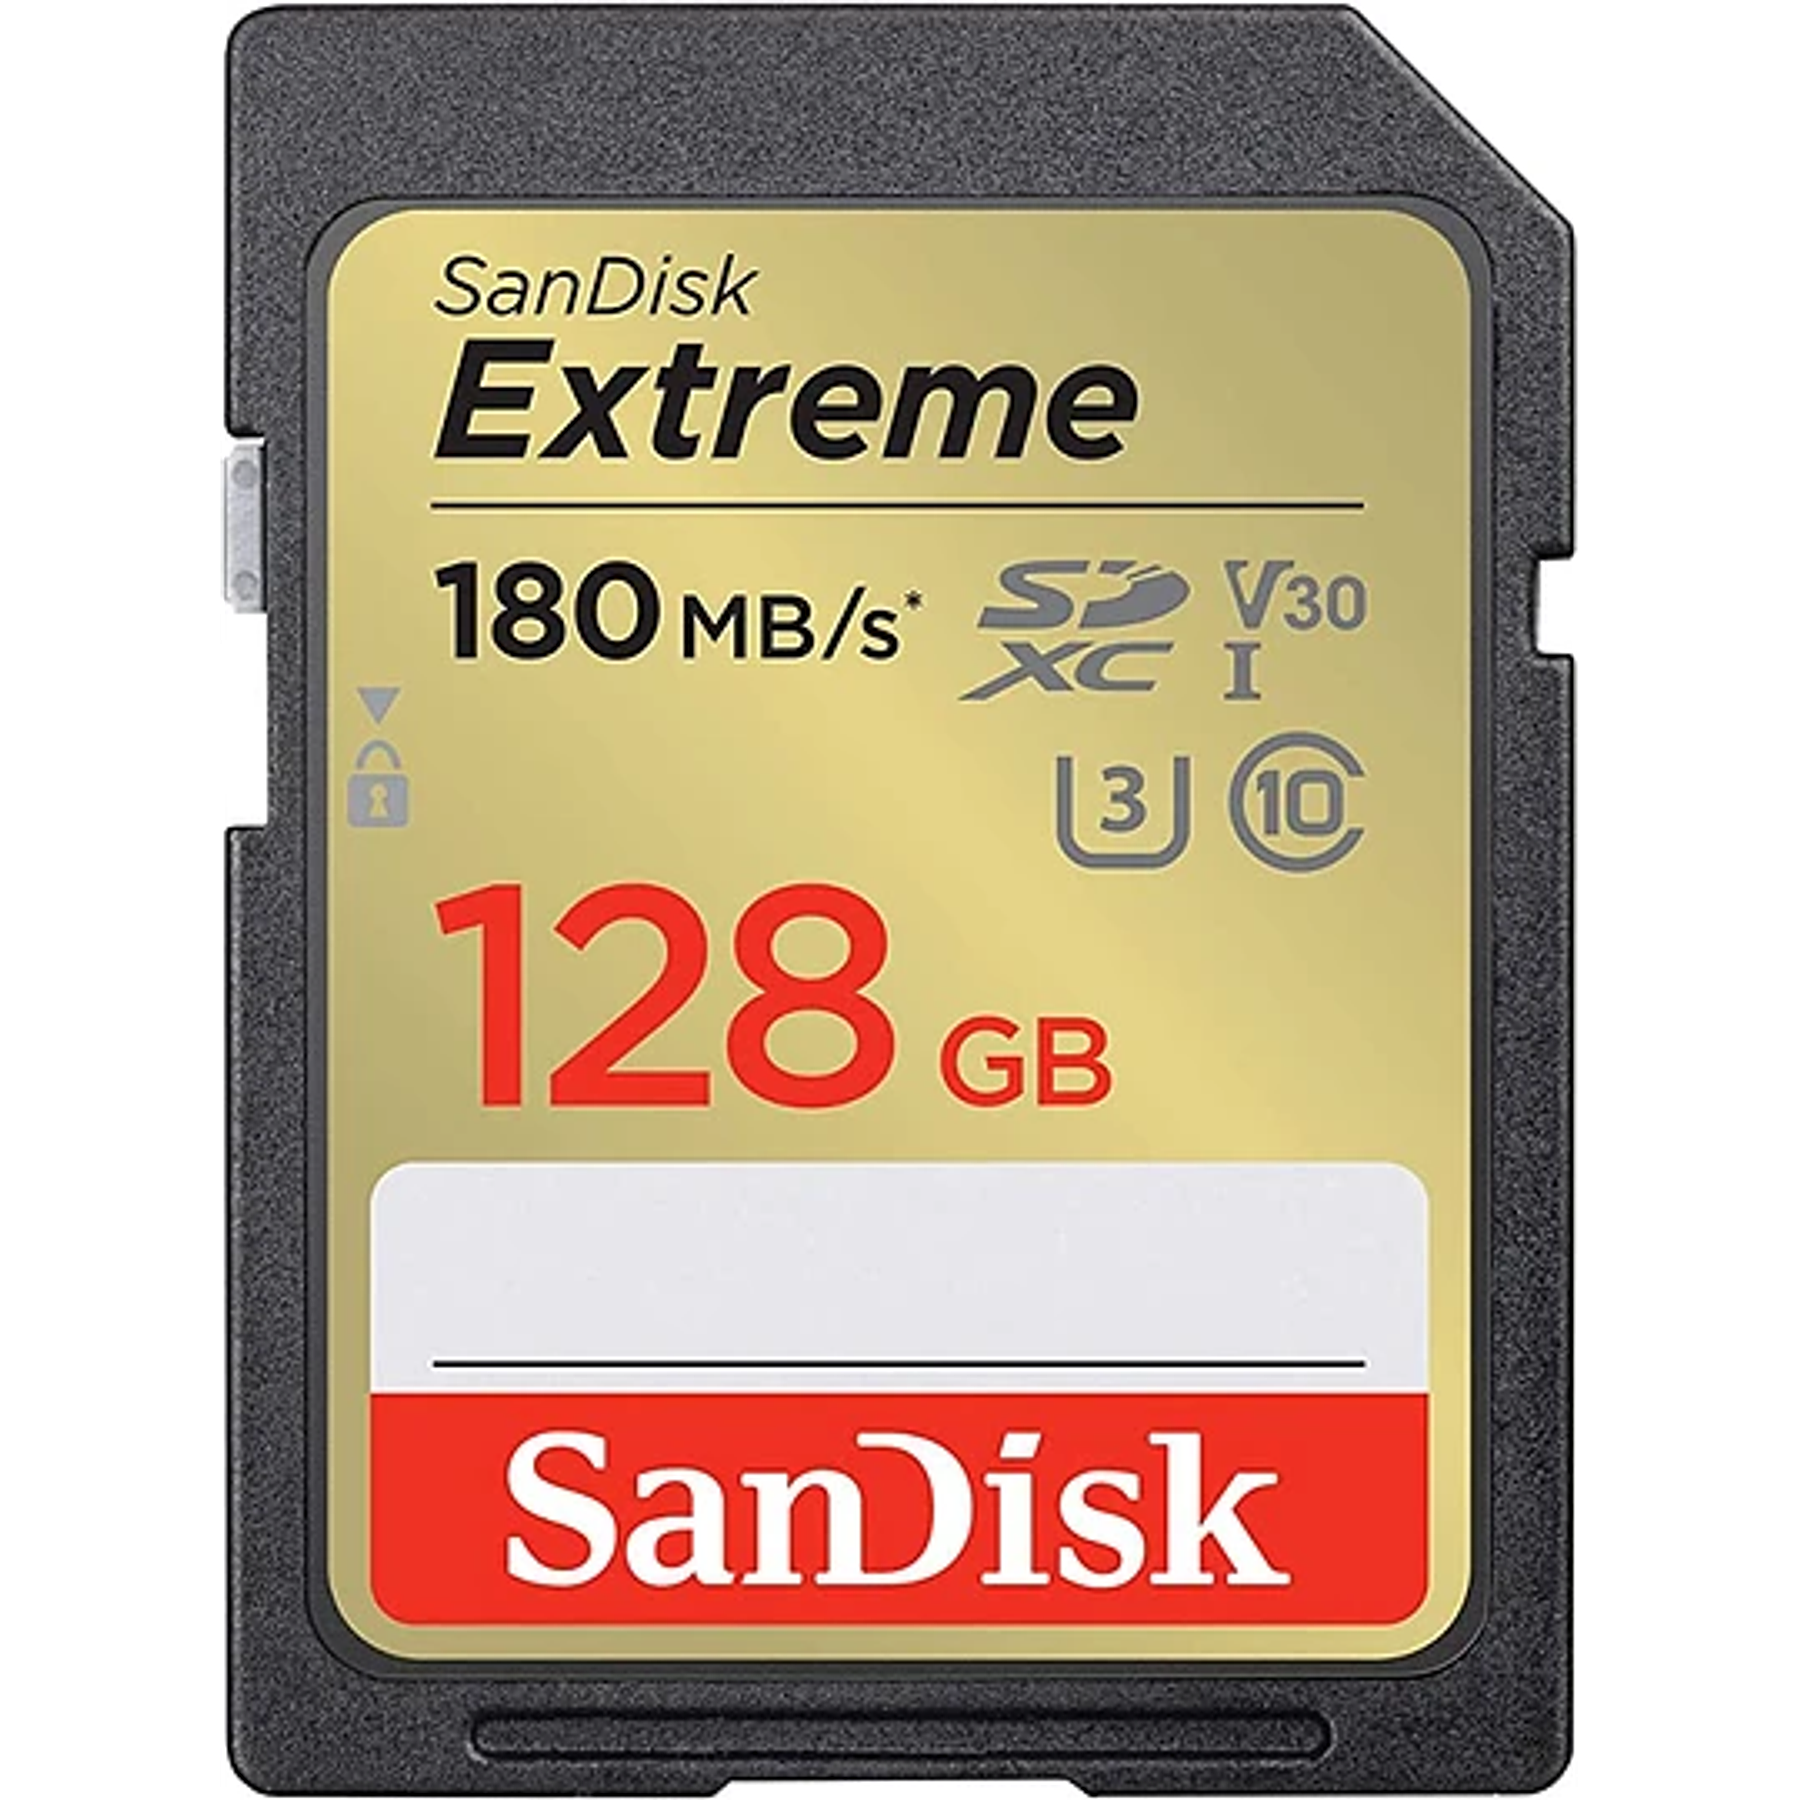 TARJETA DE MEMORIA SANDISK SD 128GB EXTREME MODELO # SDSDXVA-128G